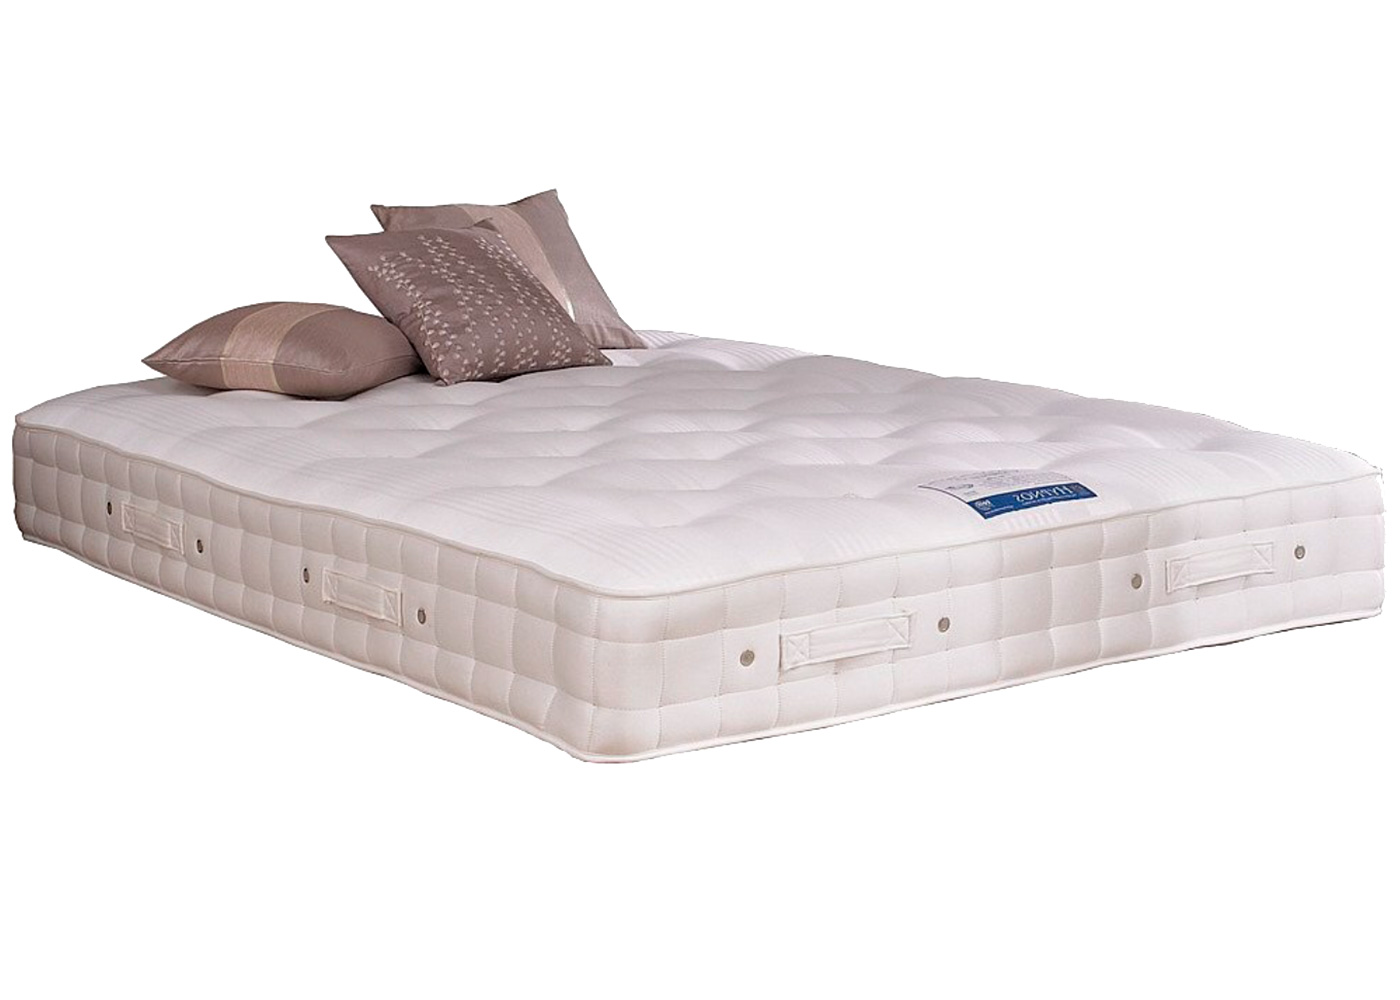 hypnos king size mattress best price